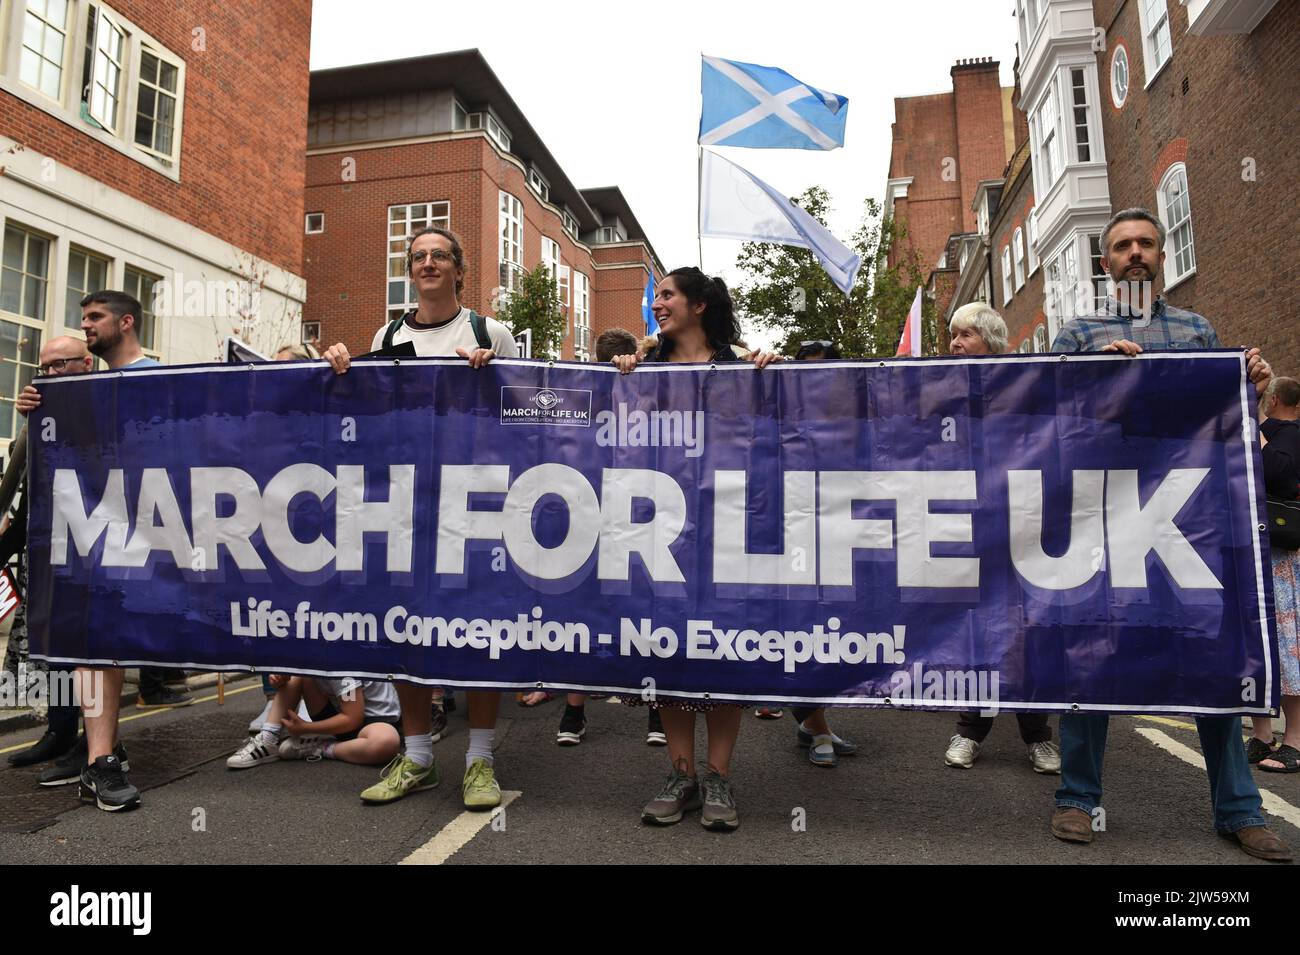 Londres, Angleterre, Royaume-Uni. 3rd septembre 2022. Les manifestants tiennent une bannière qui se lit comme suit : « Arch for Life UK », pendant le rallye. Des militants anti-avortement et des manifestants « Pro Life » ont défilé à travers le centre de Londres jusqu'à la place du Parlement pour marquer leur opposition à la loi sur l'avortement au Royaume-Uni. (Image de crédit : © Thomas Krych/ZUMA Press Wire) Banque D'Images